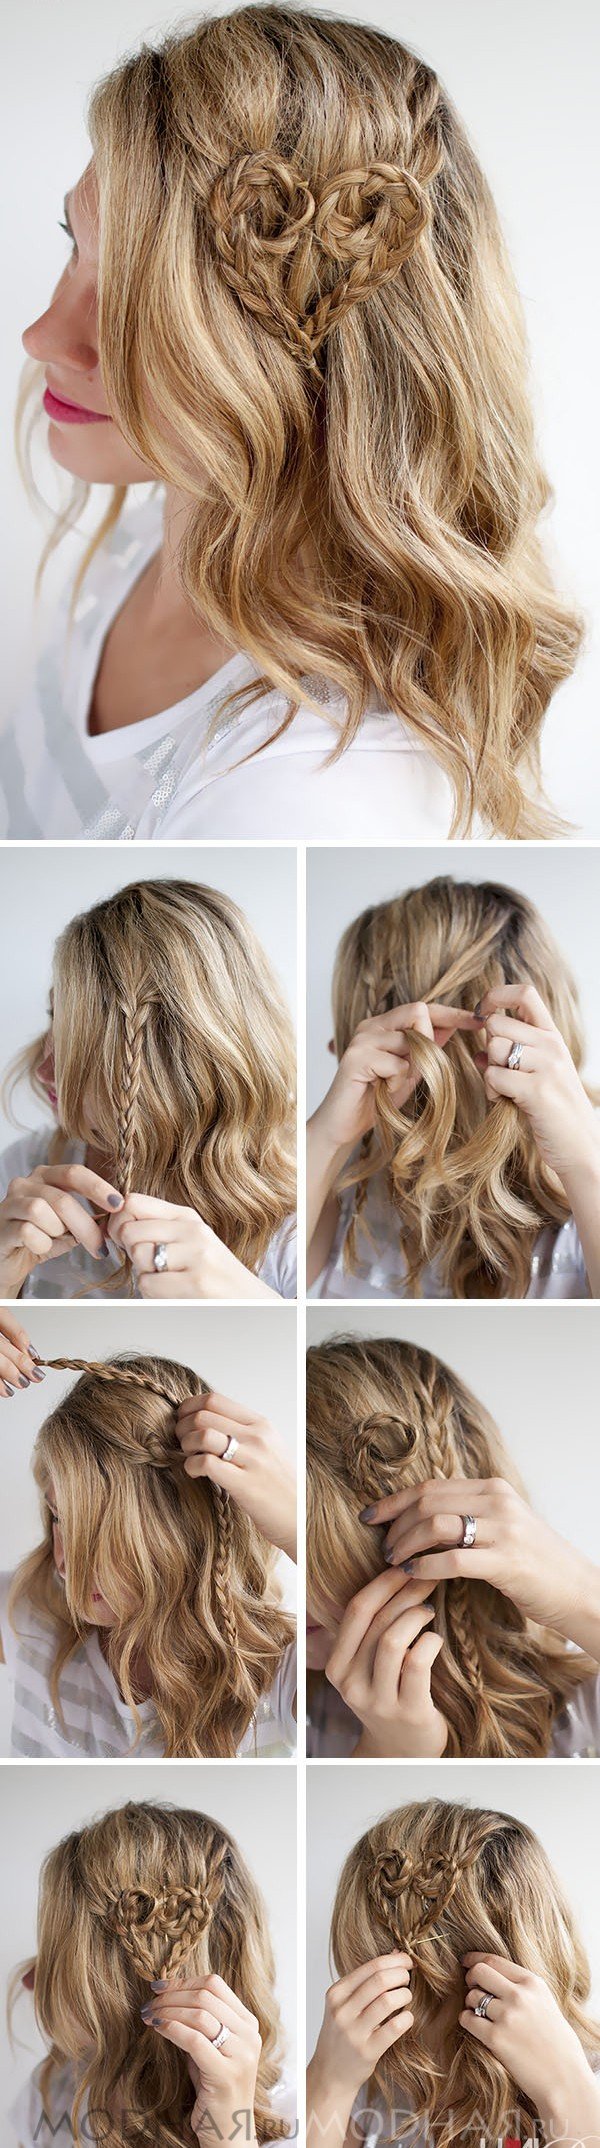 Як зробити зачіску самої на весілля